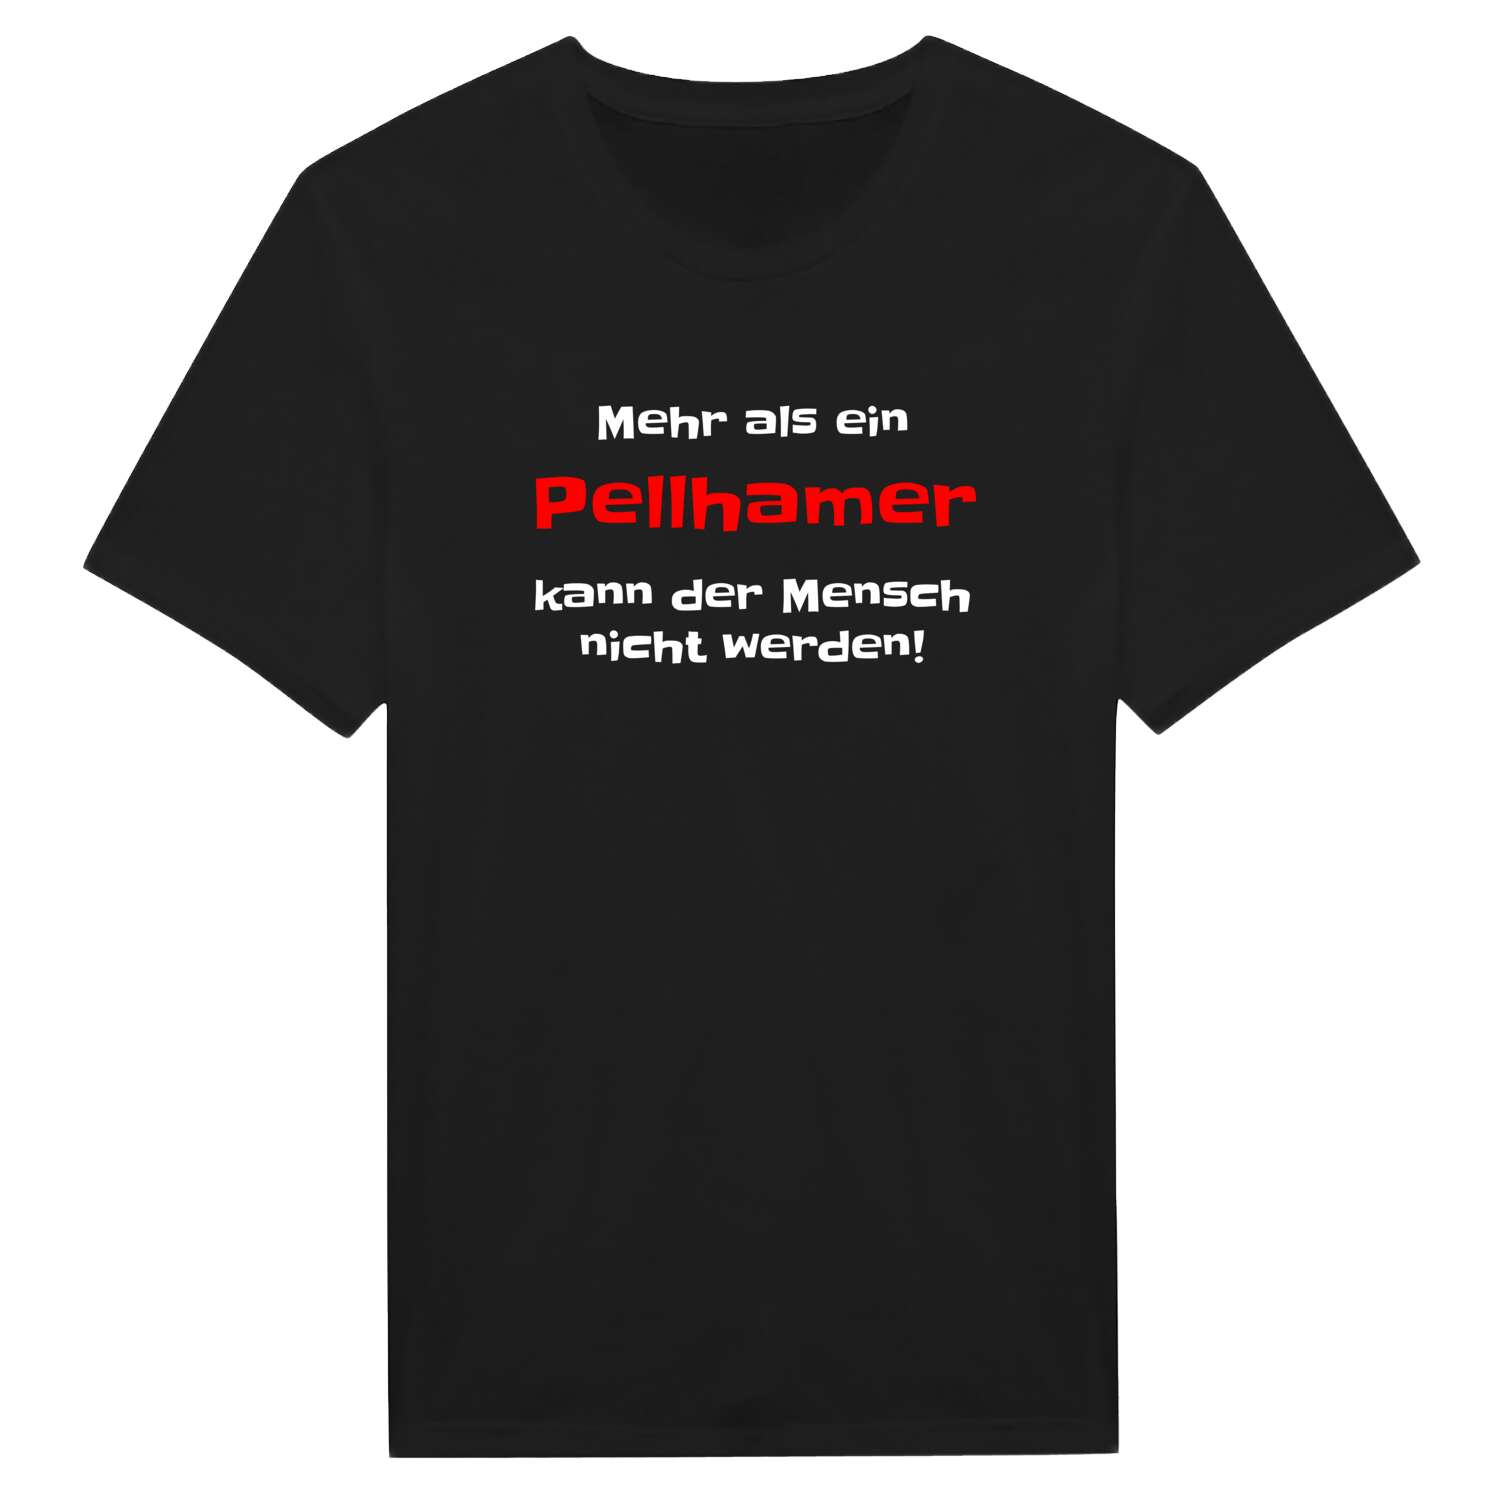 Pellham T-Shirt »Mehr als ein«